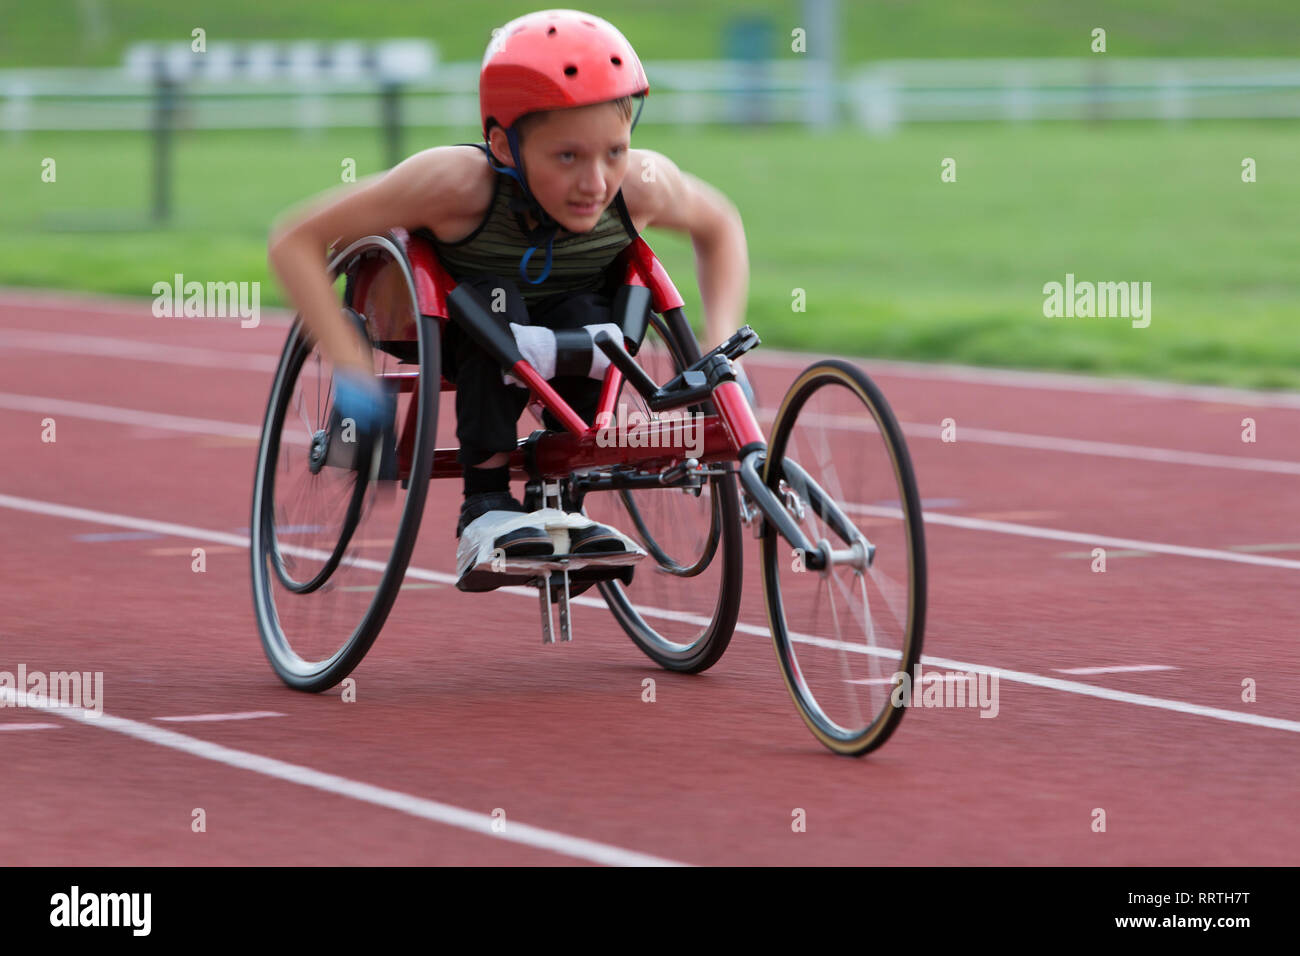 Bestimmt, haltbare Jugendmädchen paraplegic Athlet Beschleunigung zusammen Sport Track im Rollstuhl Rennen Stockfoto